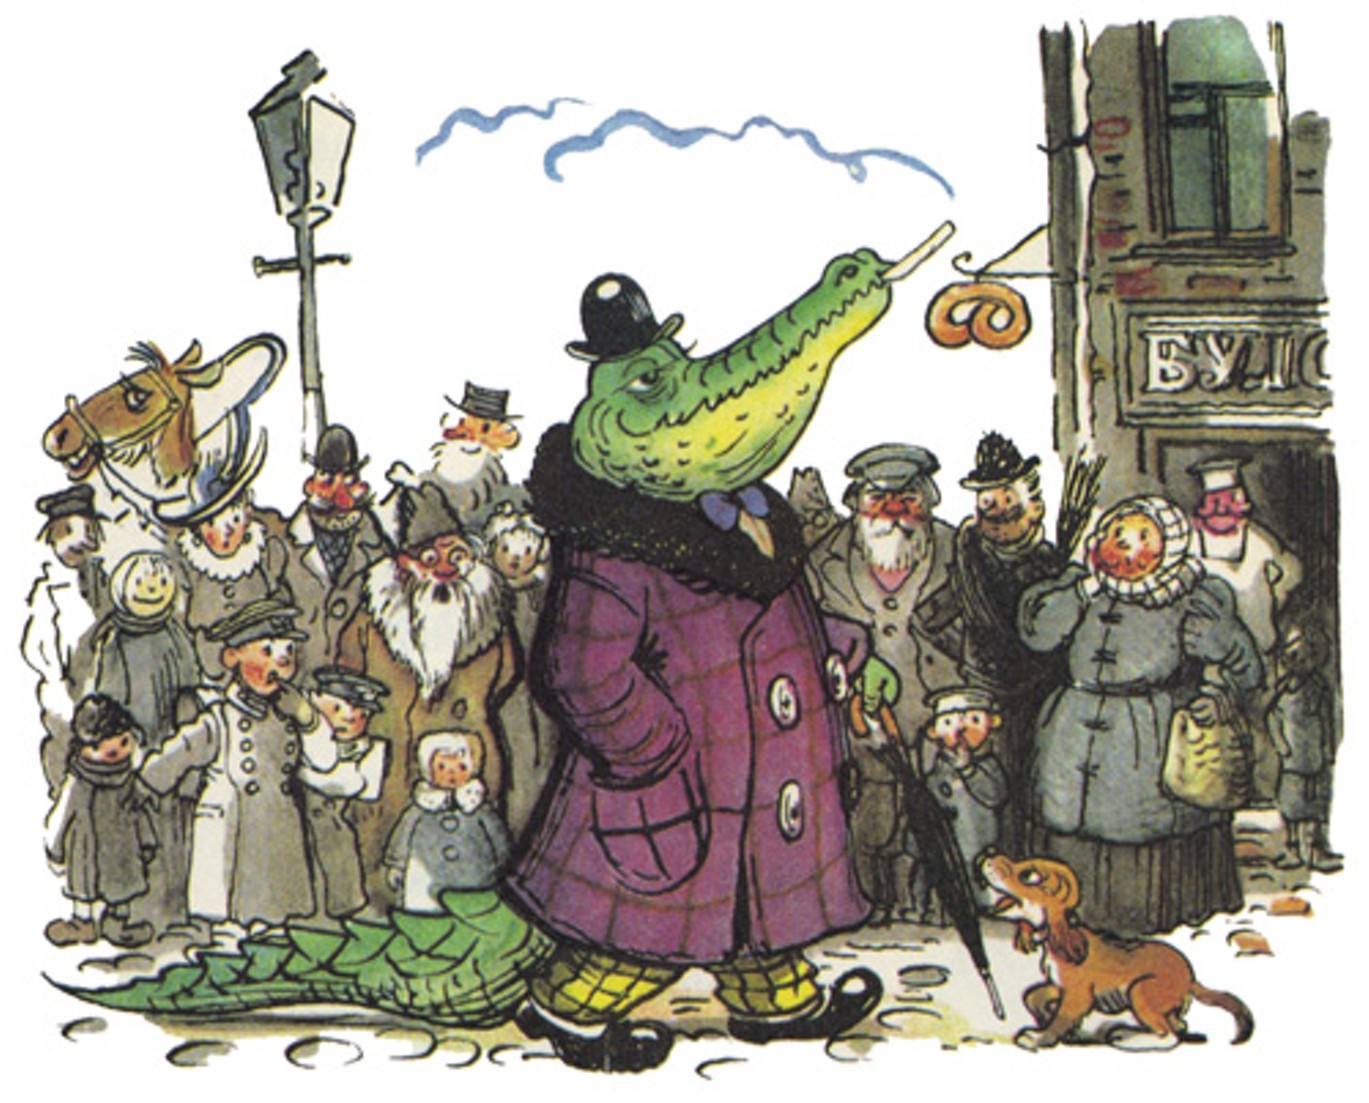 Сказка крокодил - стихи для детей